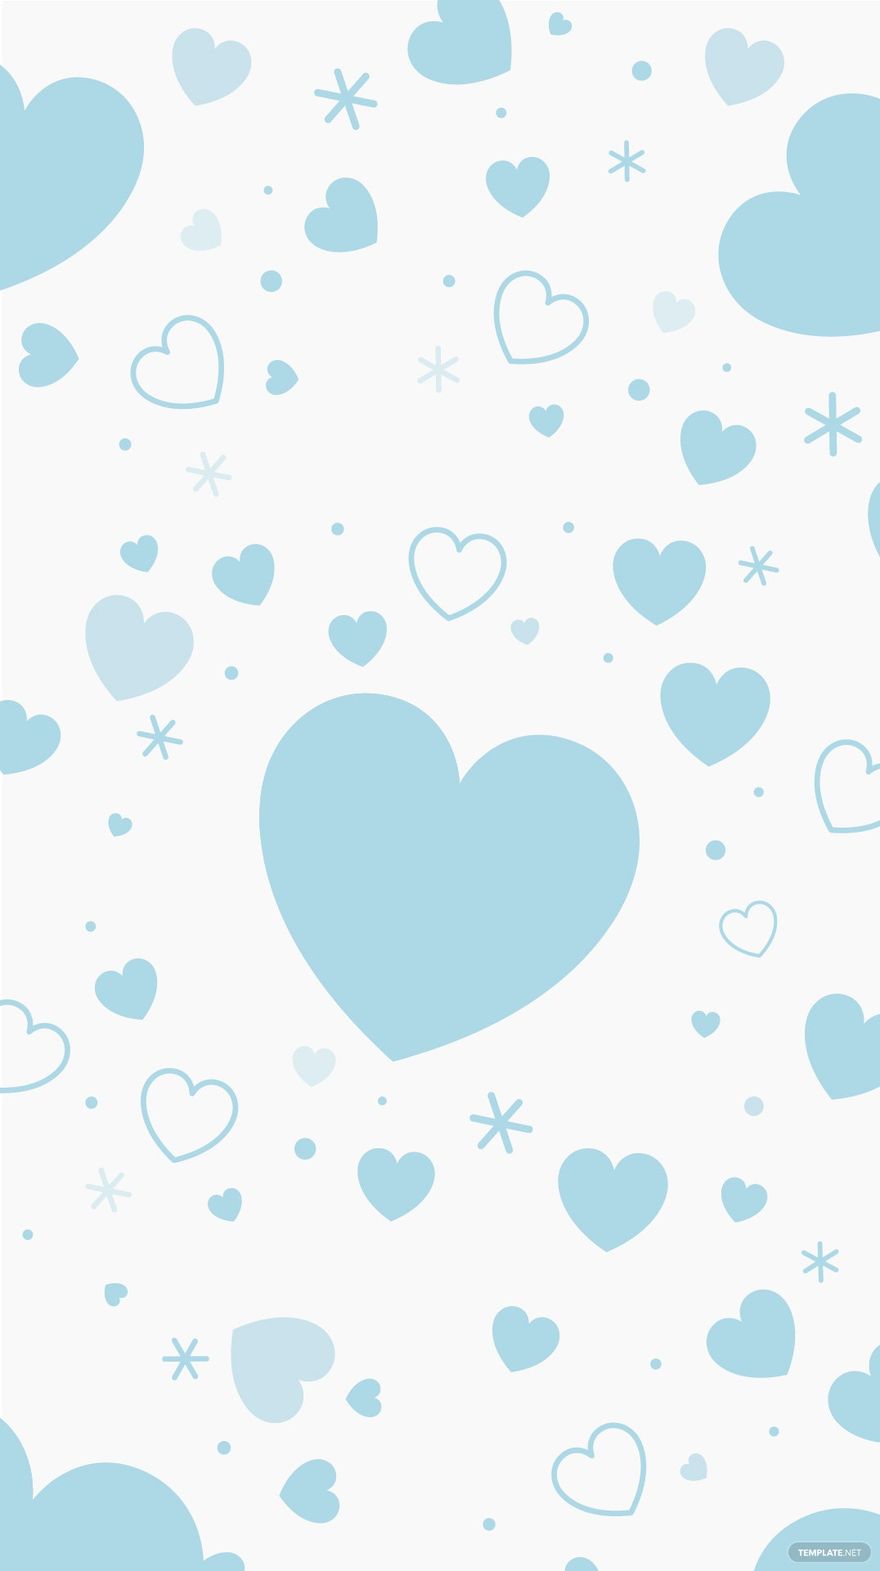 Free Light Blue Heart Background - EPS, Illustrator, JPG, SVG ...